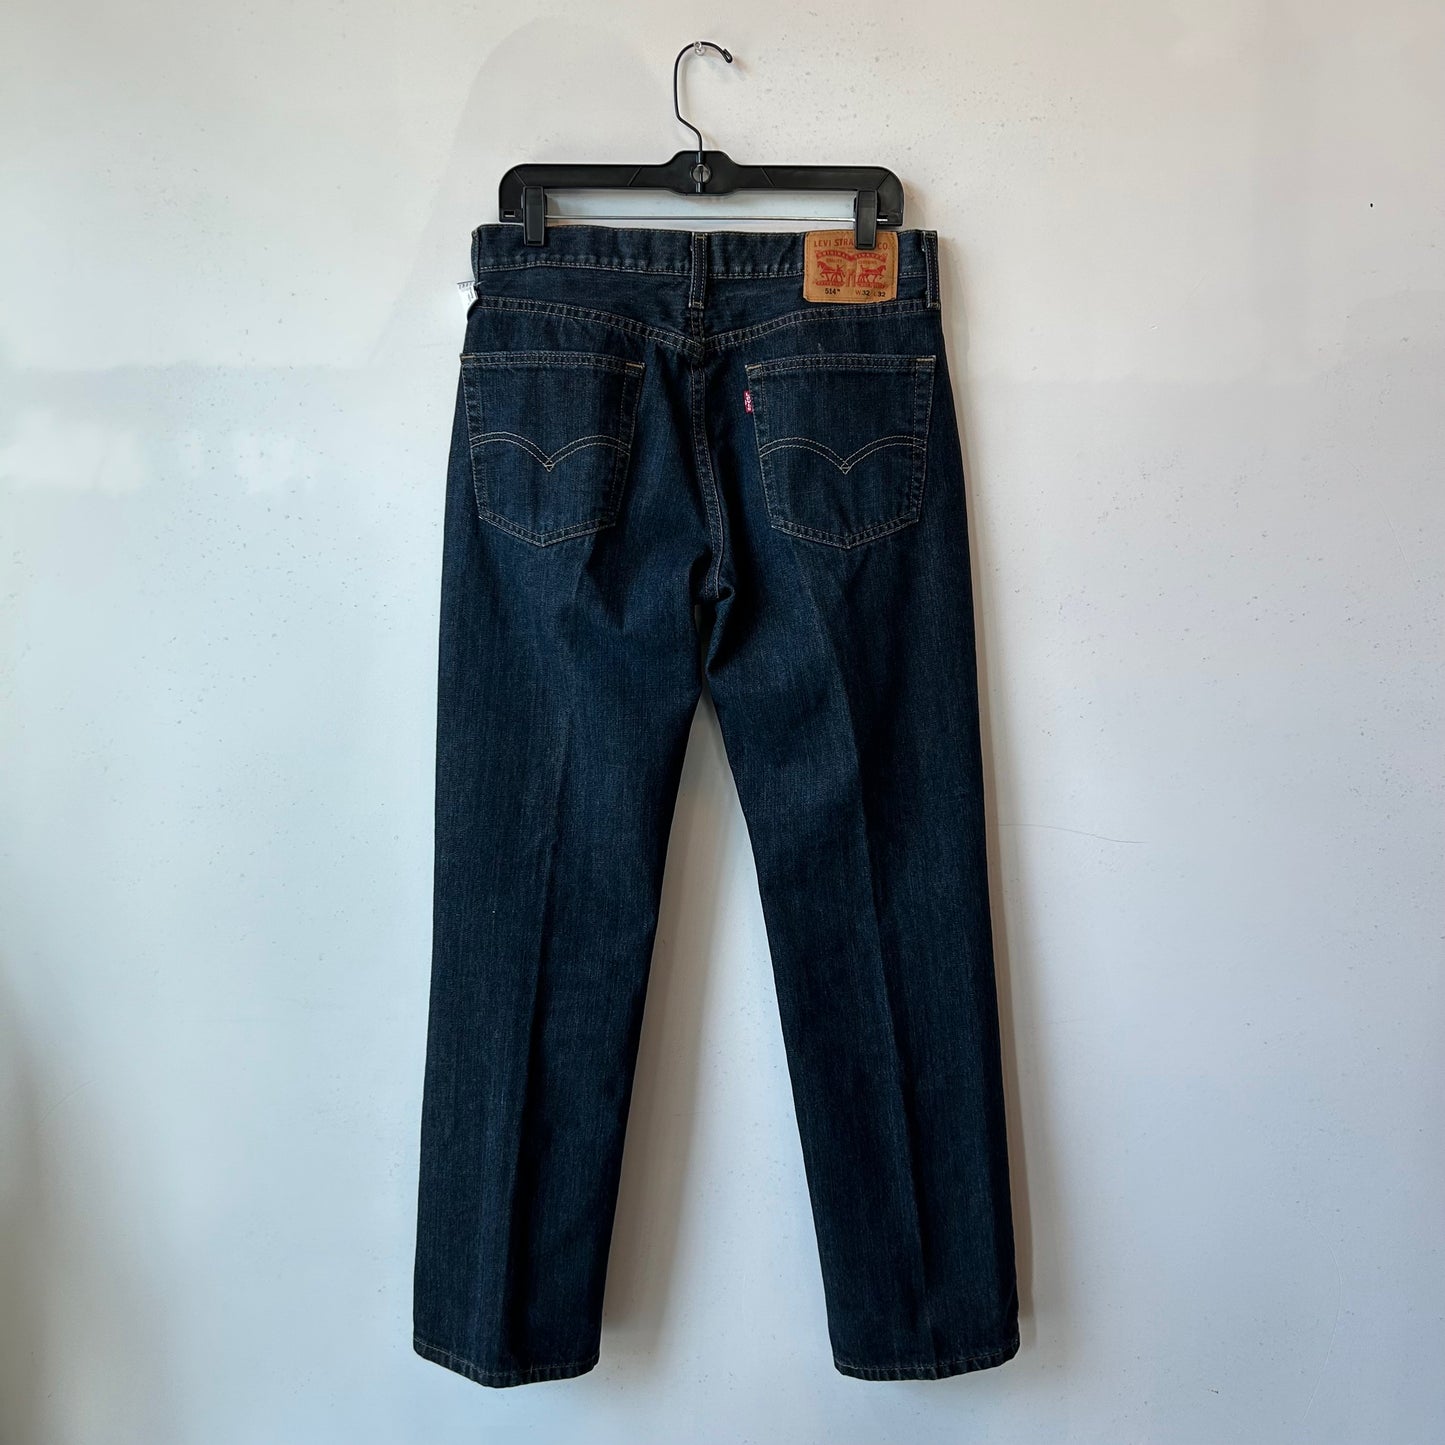 L 514  32 x 32 Levi's Jeans